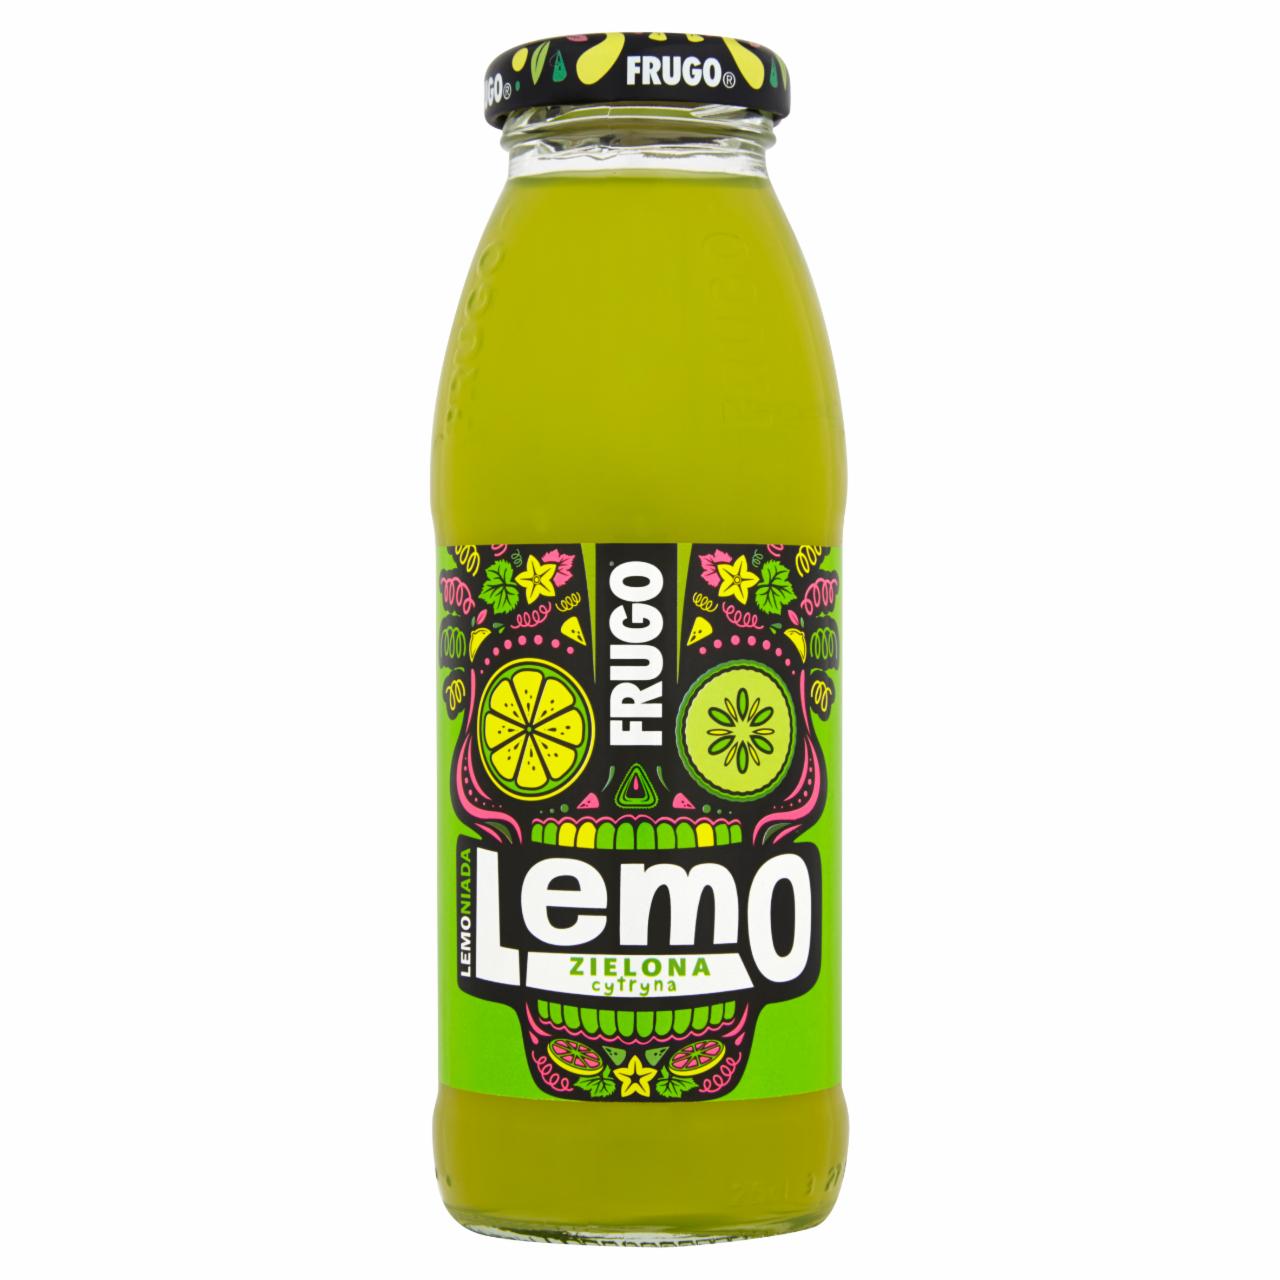 Zdjęcia - Frugo Lemo Lemoniada Zielona cytryna Napój niegazowany 250 ml